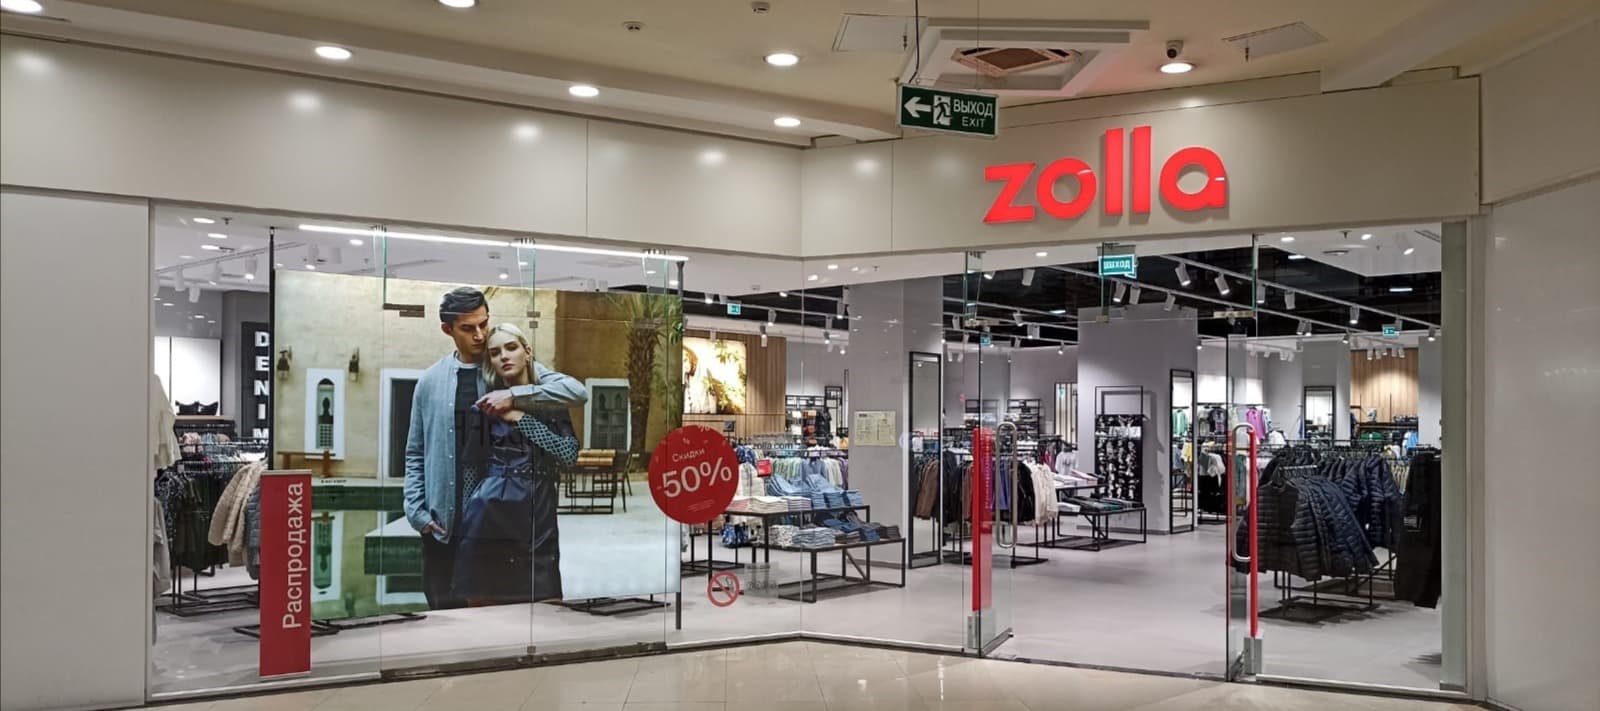 Фото новости: "Владелец сети Zolla запустит новый бренд Nice&Easy в следующем году"